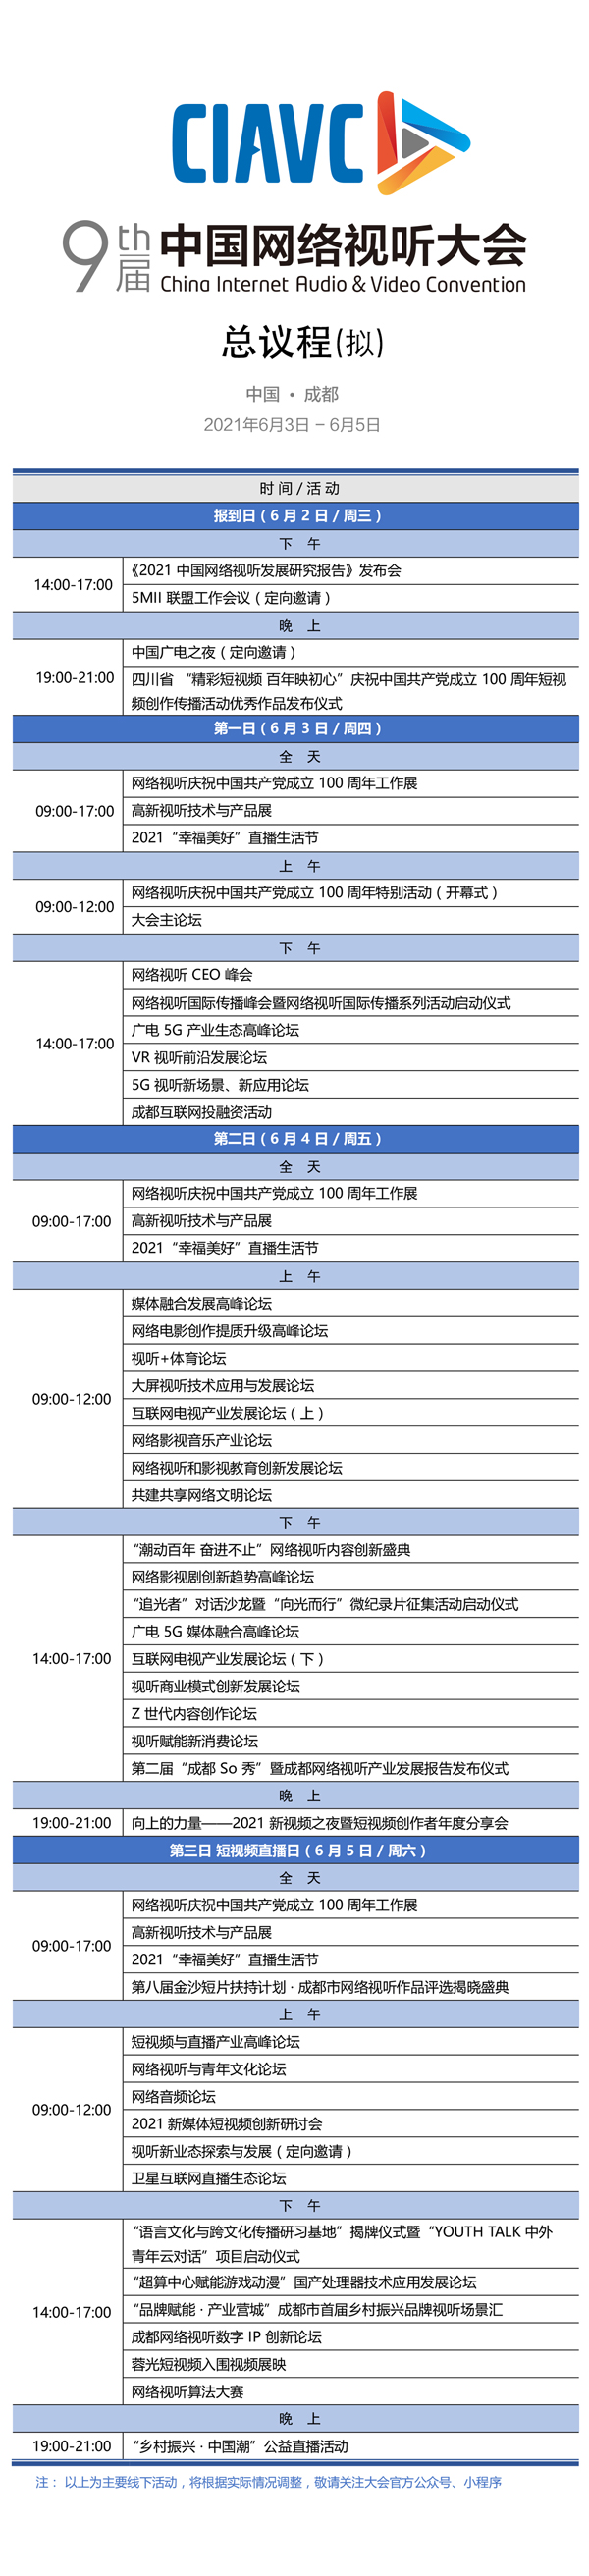 第九届中国网络视听大会将于6月3日在成都开幕